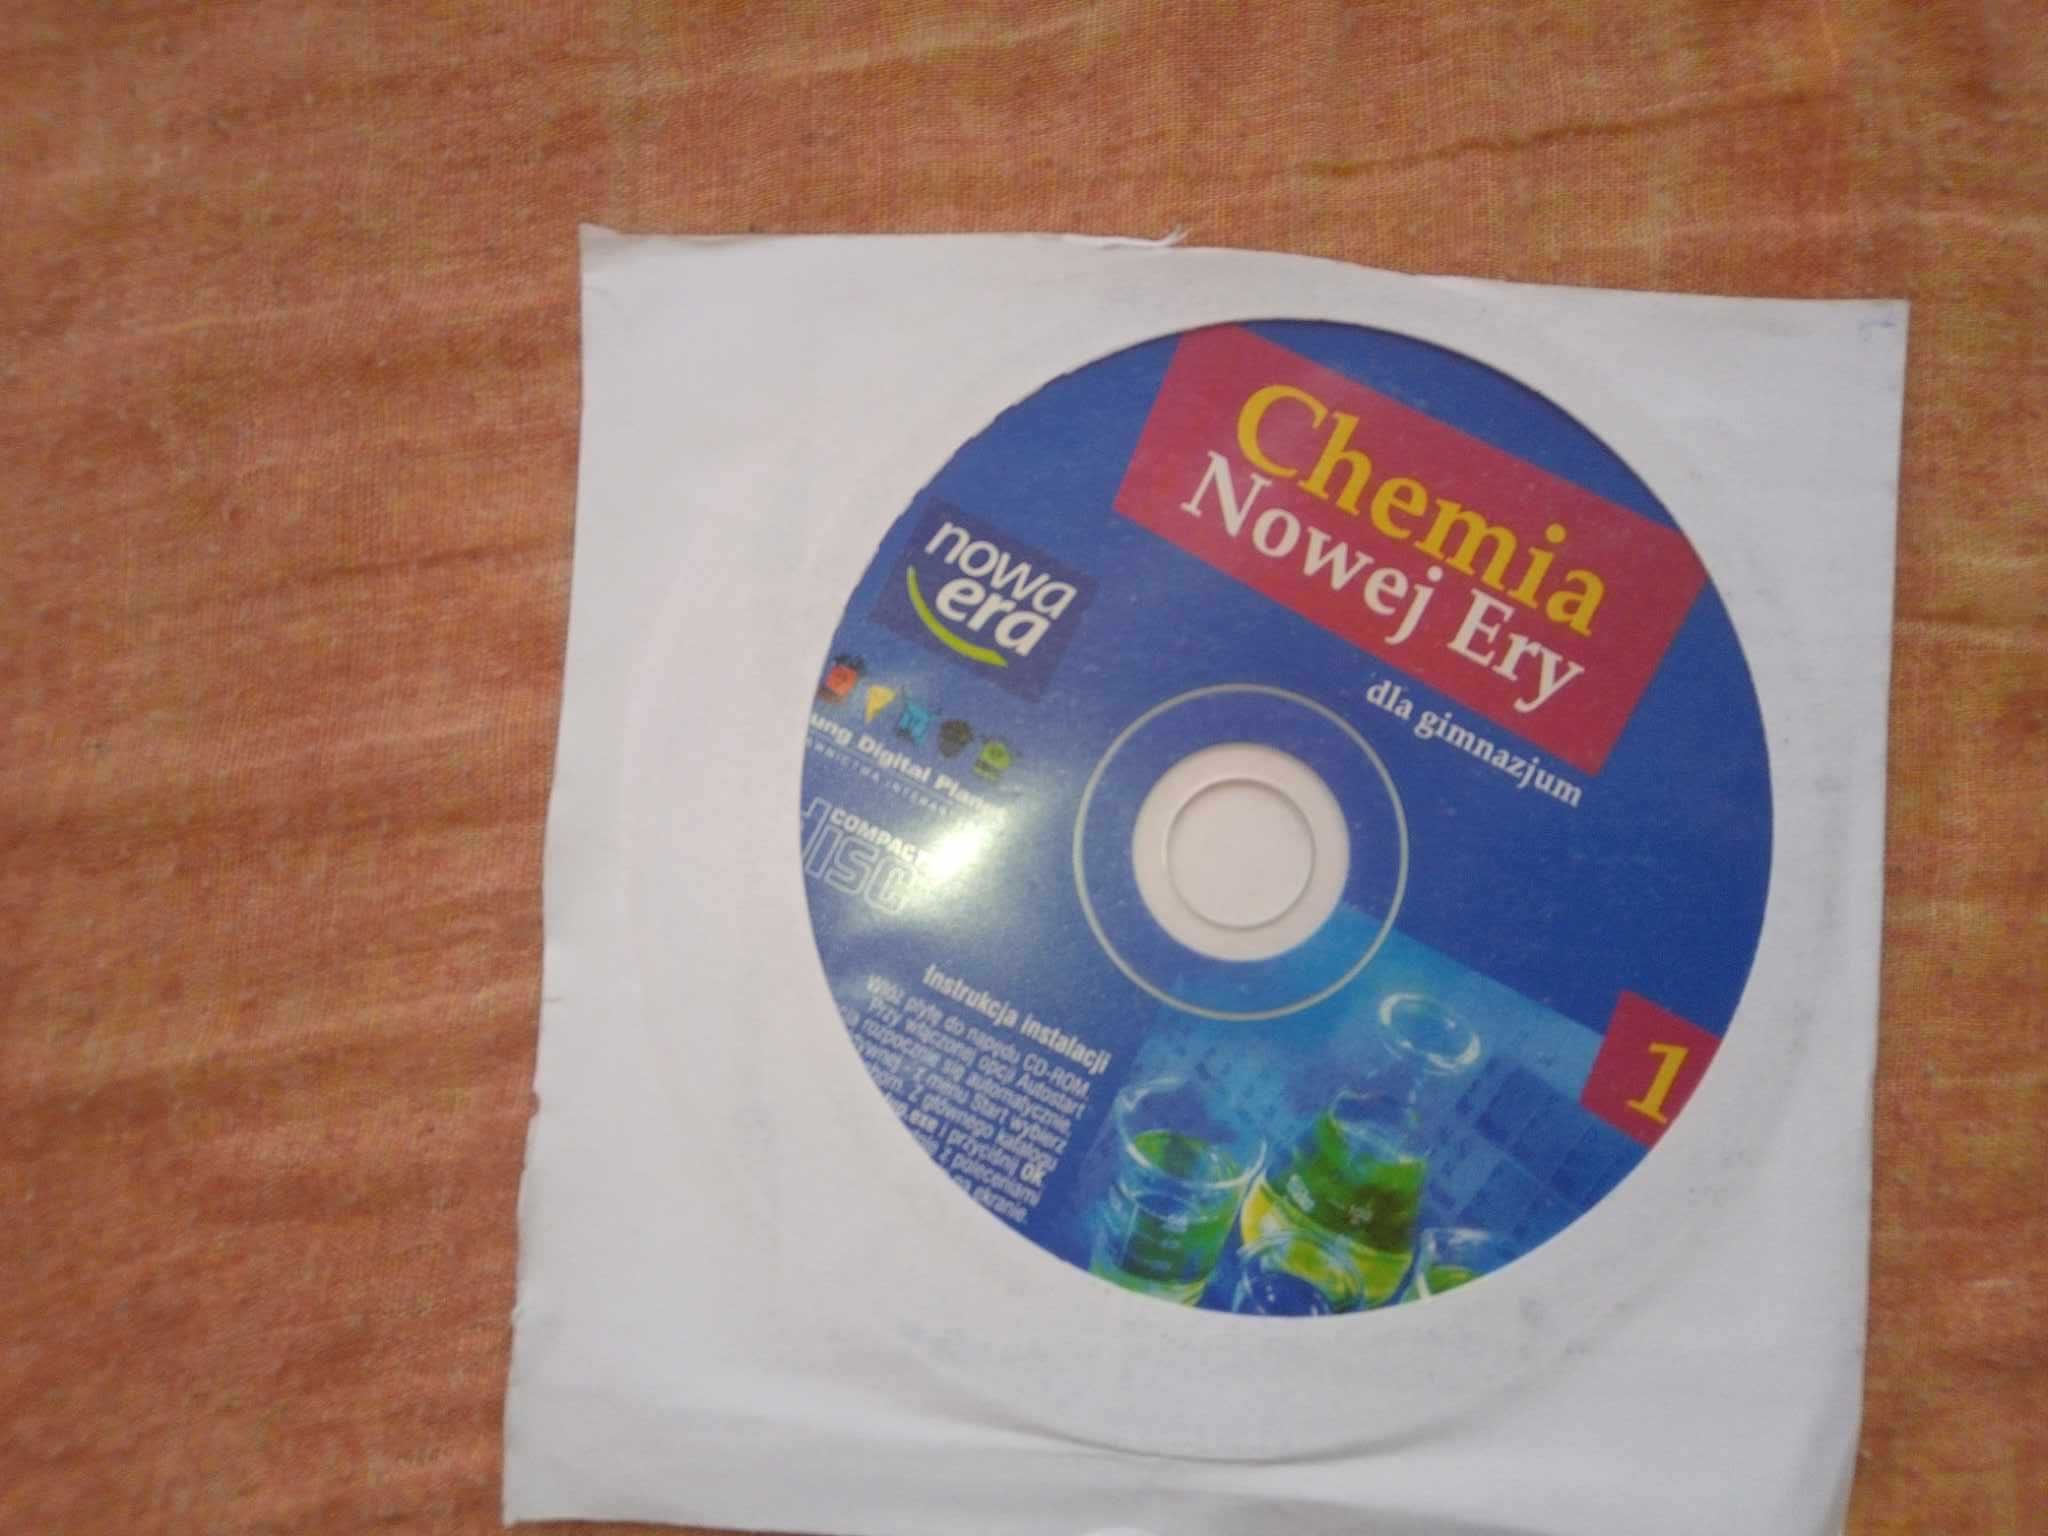 Chemia Nowej Ery 1 dla gimnazjum płyta CD Nowa Era 2007